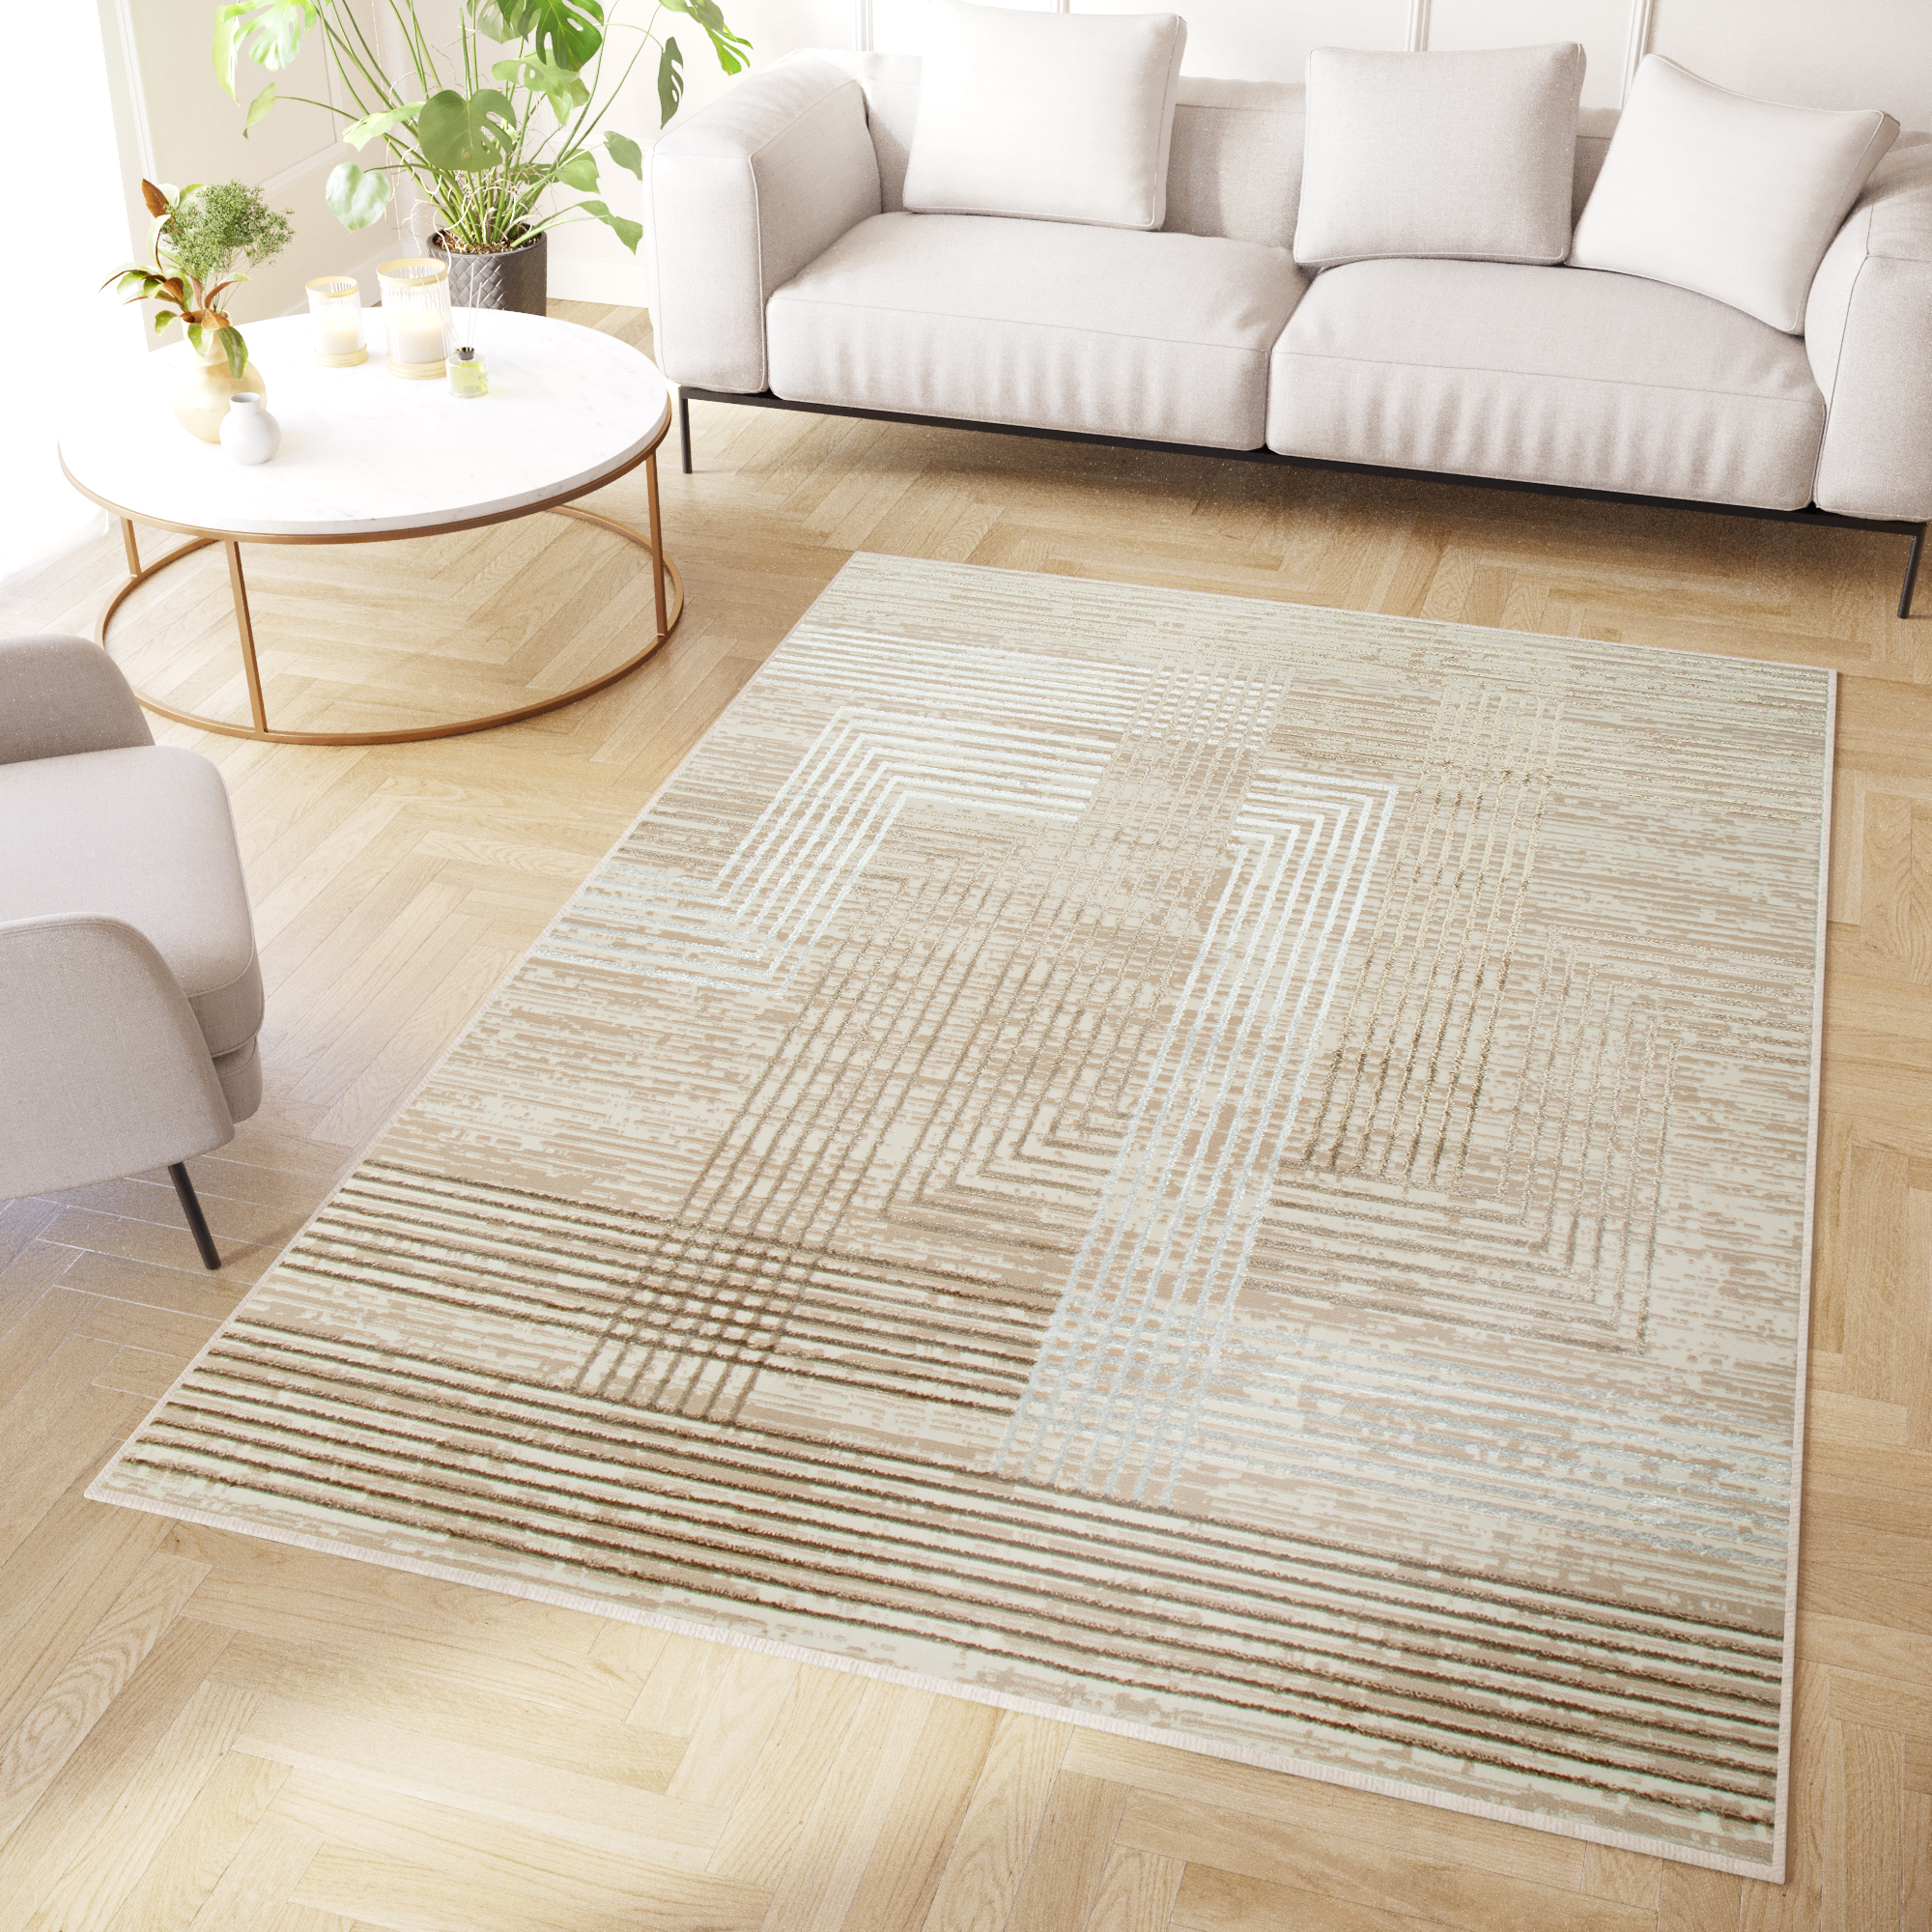 Teppich Kurzflor Beige Grau Modern Glänzend Geometrisch 3D Effekt  Wohnzimmer | eBay